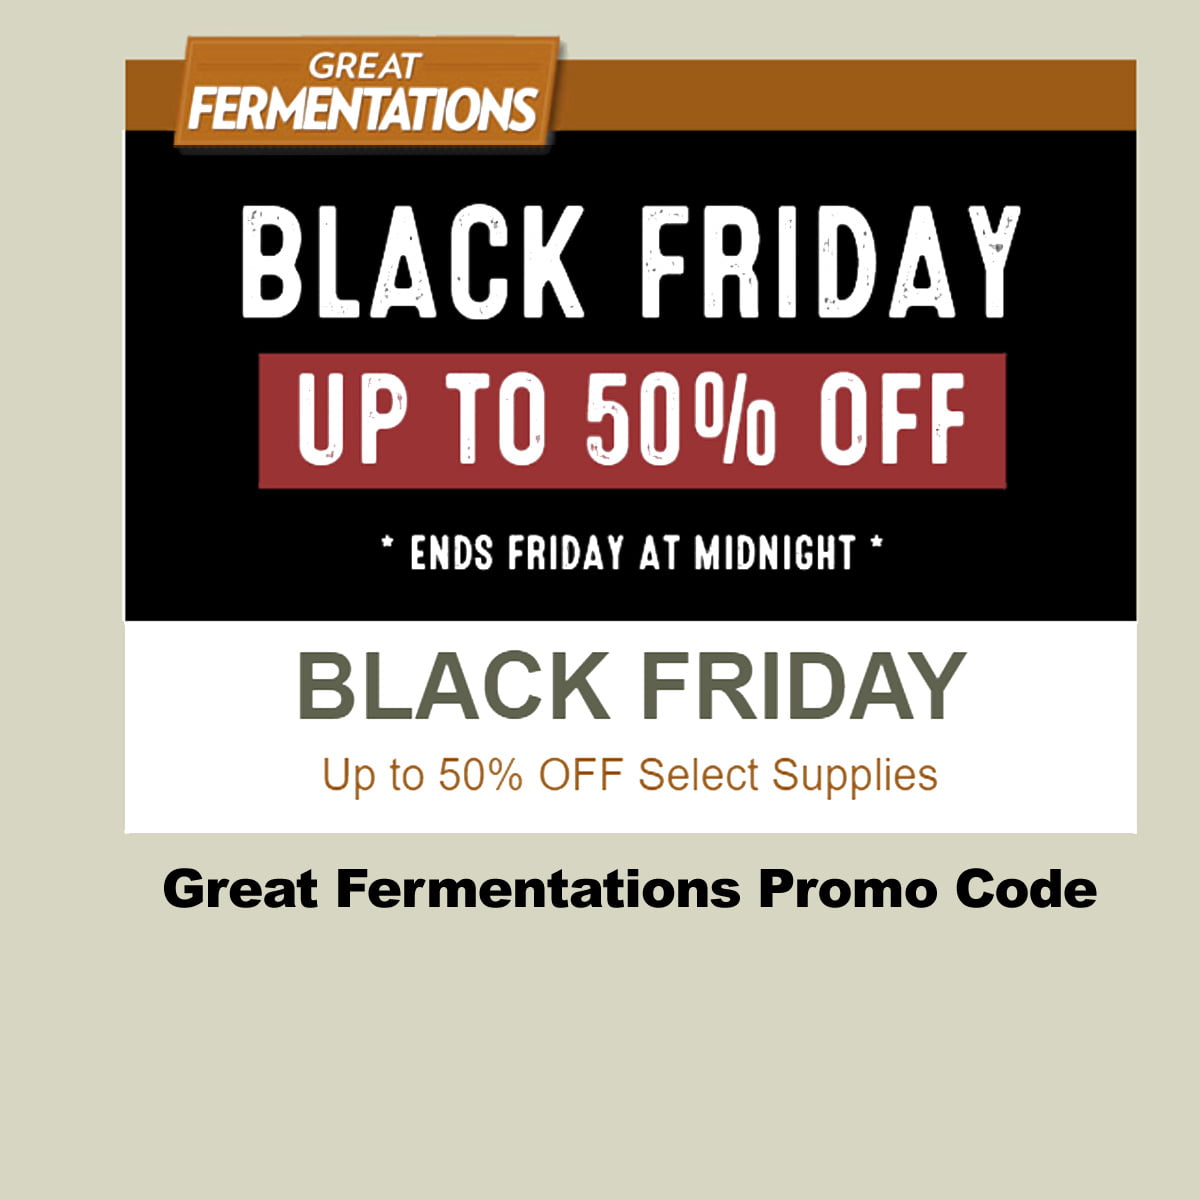 GreatFermentations.com Black Friday Promo Code